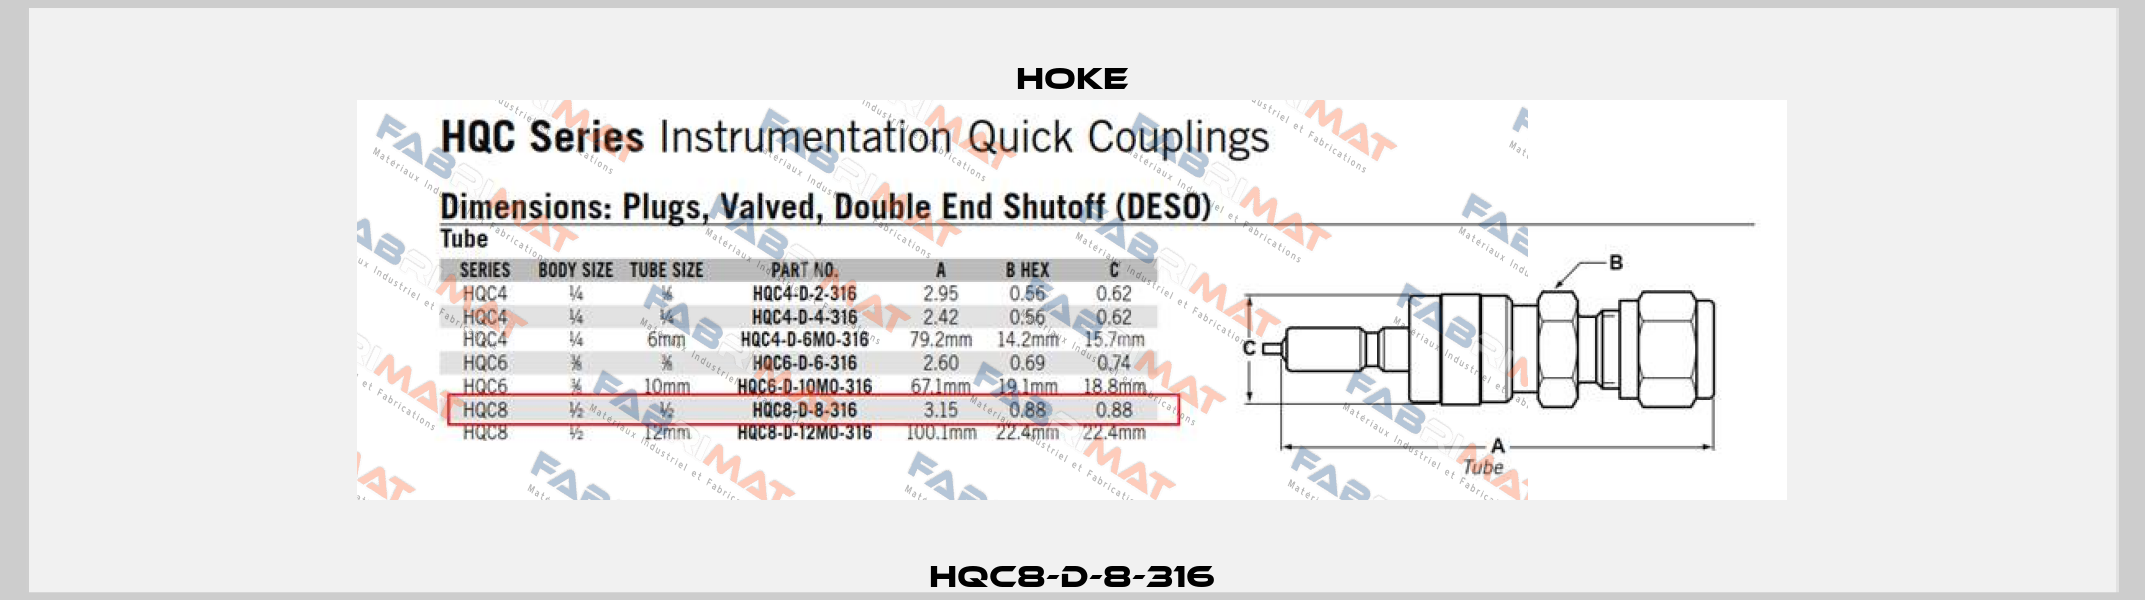 HQC8-D-8-316 Hoke